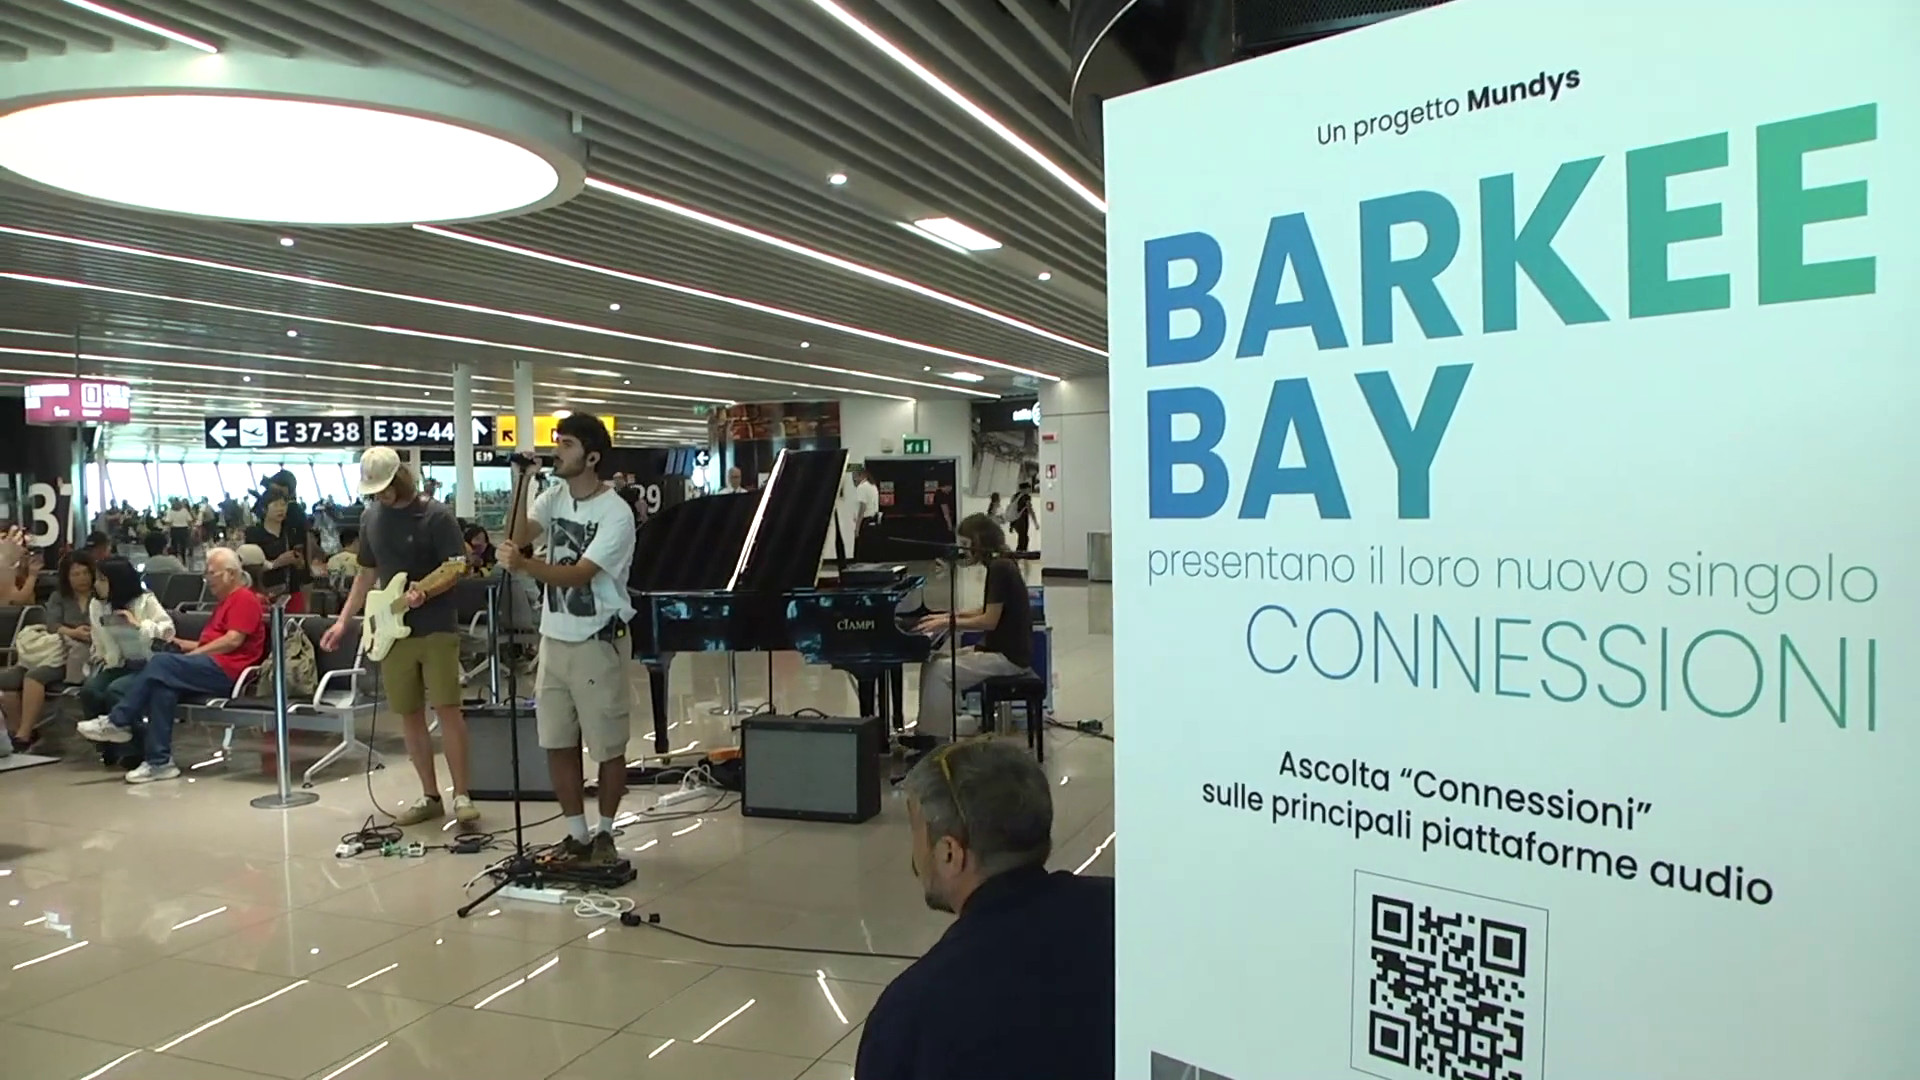 Barkee Bay e Mundys insieme per la mobilità sostenibile